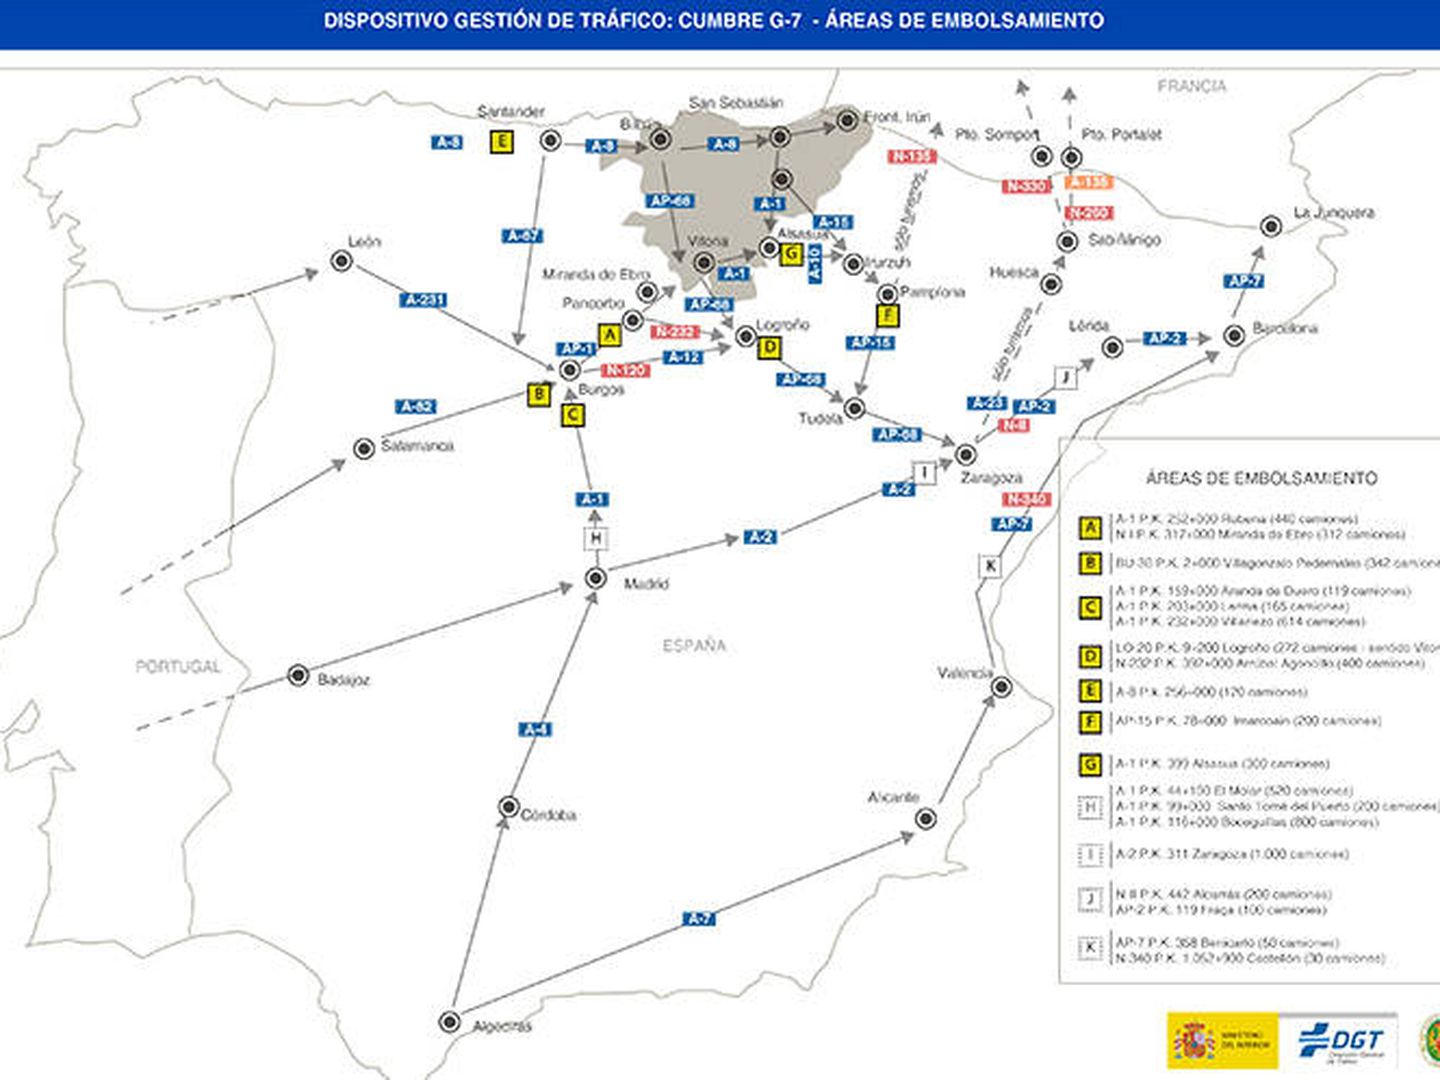 Mapa de las zonas de embolsamiento de vehículos pesados durante la cumbre de Biarritz. (DGT)